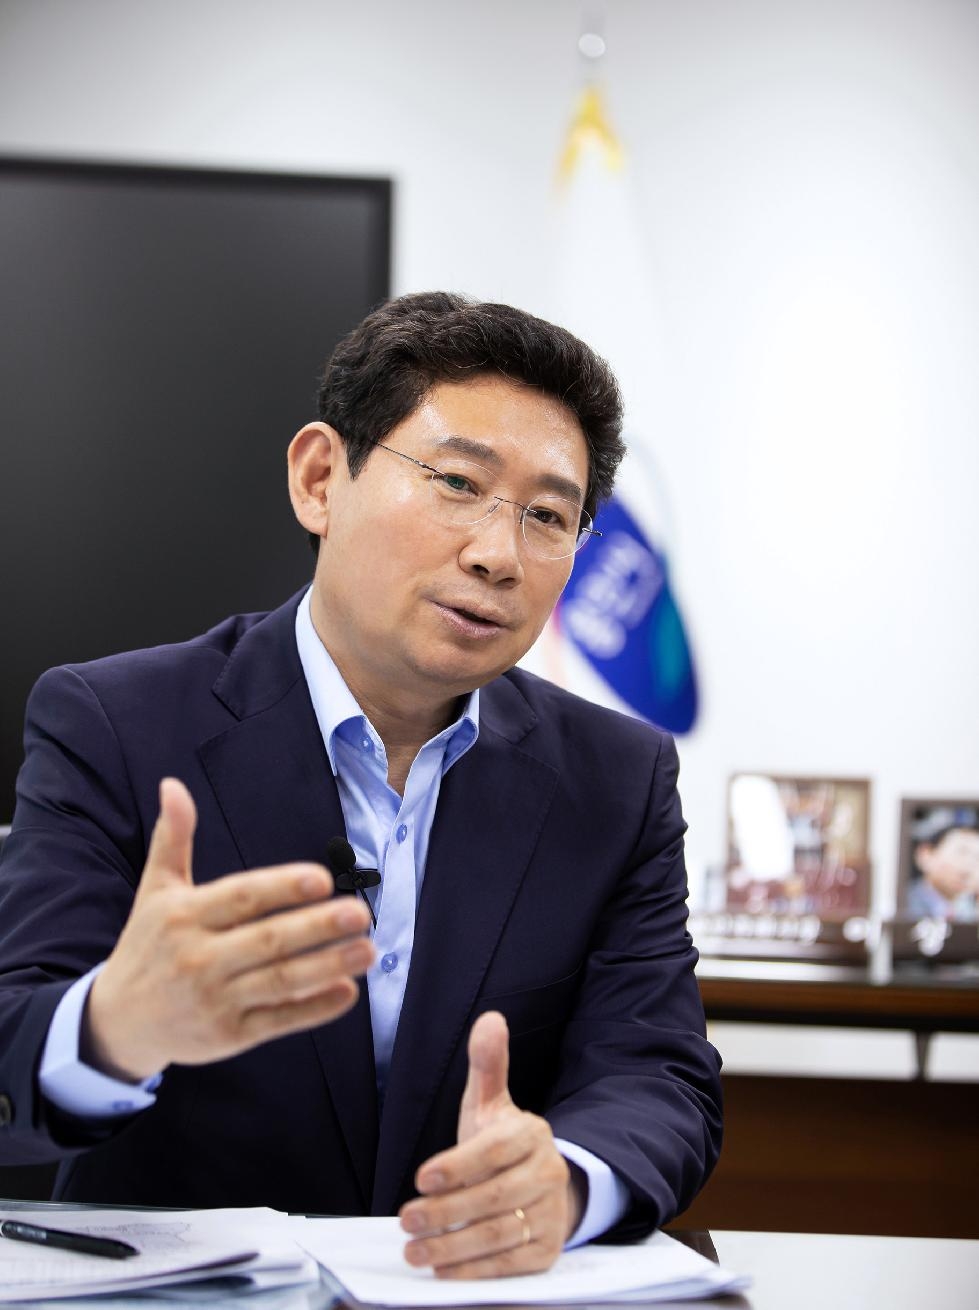 이상일 용인시장, ‘광교 송전철탑’ 문제로 김홍일 국민권익위원장에게 서한